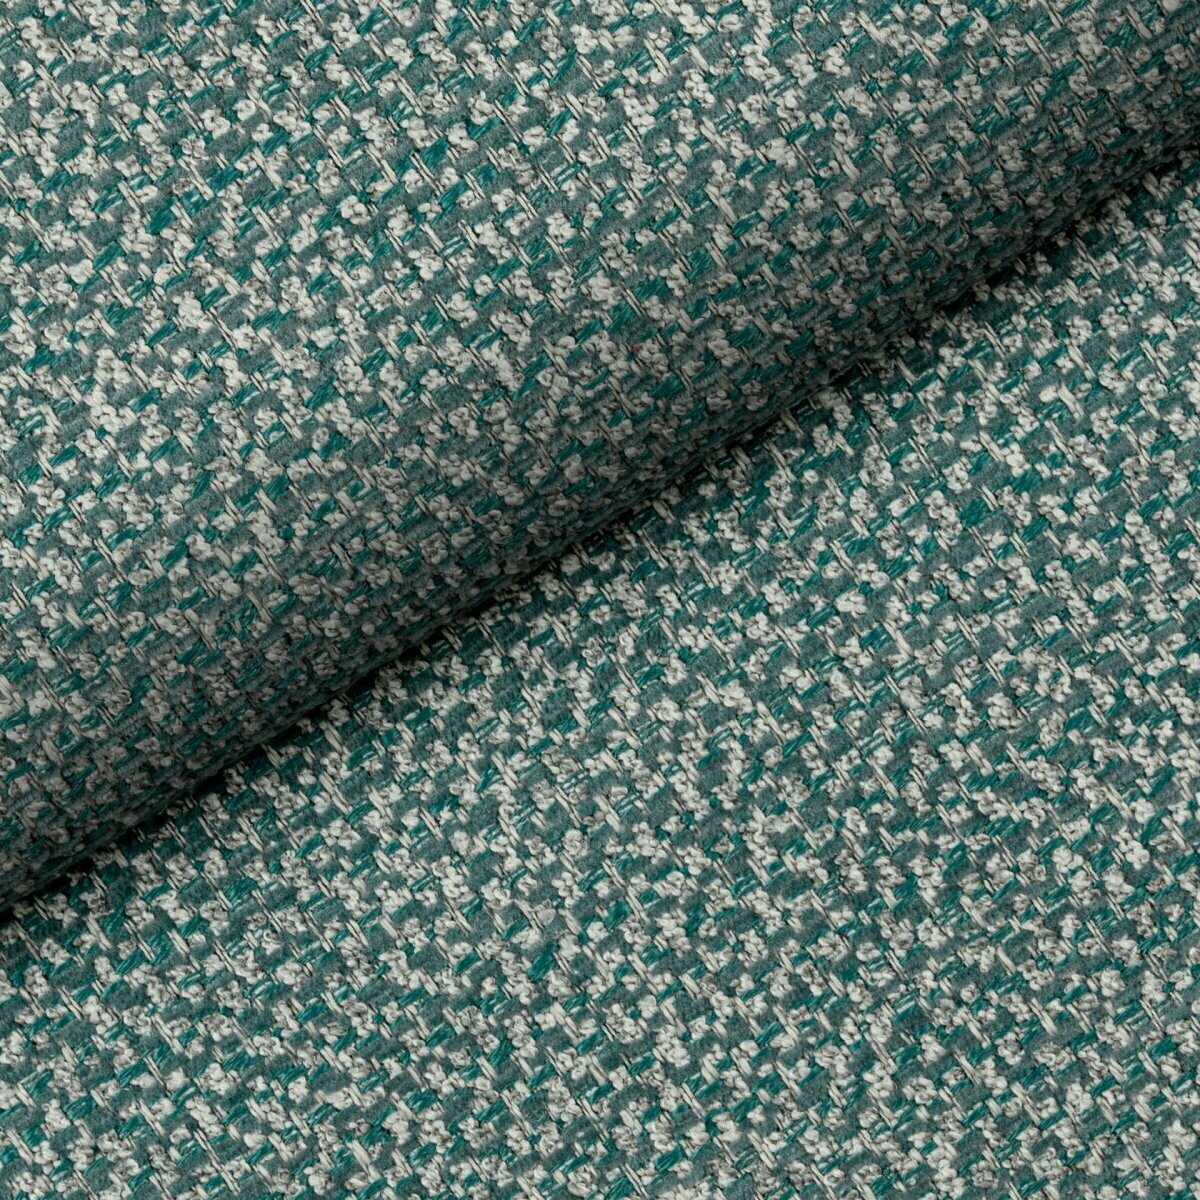 Unikatowa tkanina Nebbia 04 Fargotex. Intrygujący niebieski kolor z beżowymi akcentami idealnie sprawdzi się wszystkich meblach tapicerowanych.